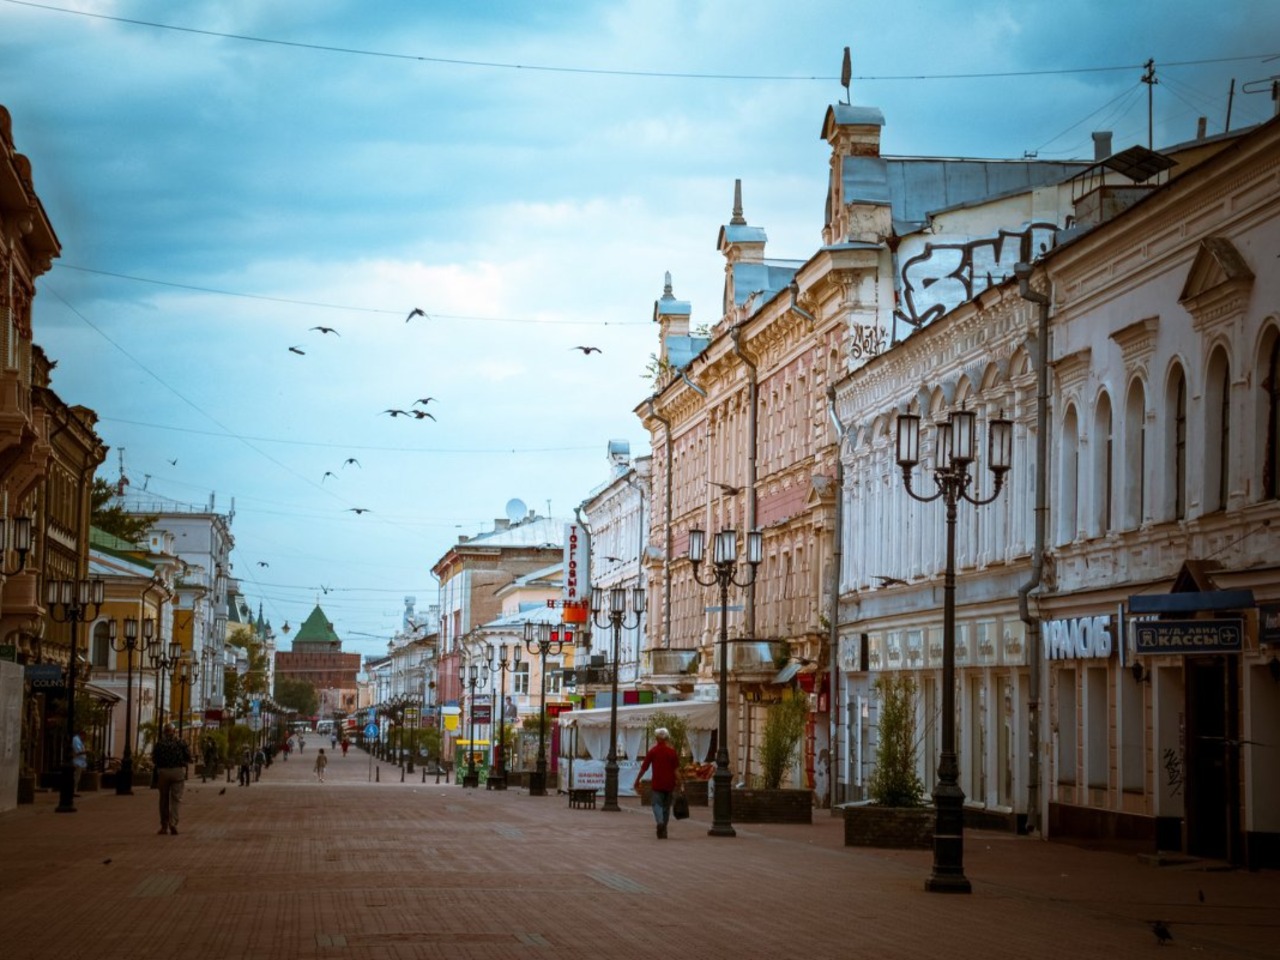 След Серебряного века в Нижнем Новгороде  | Цена 6400₽, отзывы, описание экскурсии